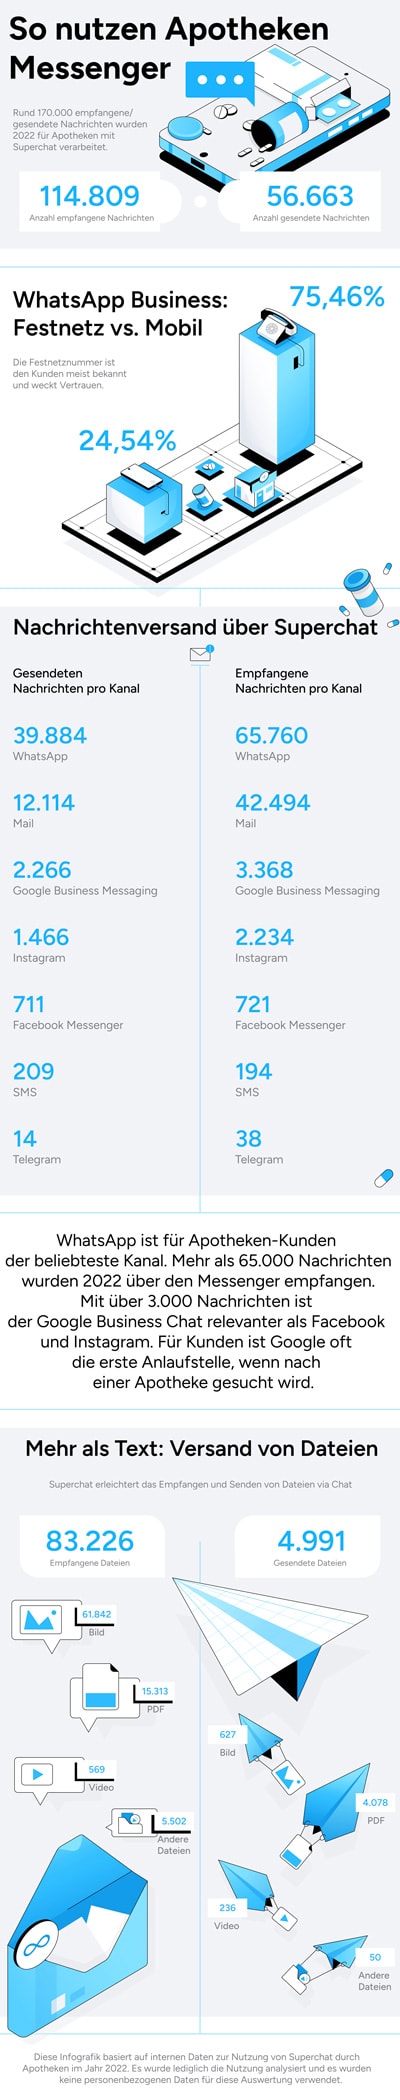 WhatsApp-Apotheken-Infografik-neu